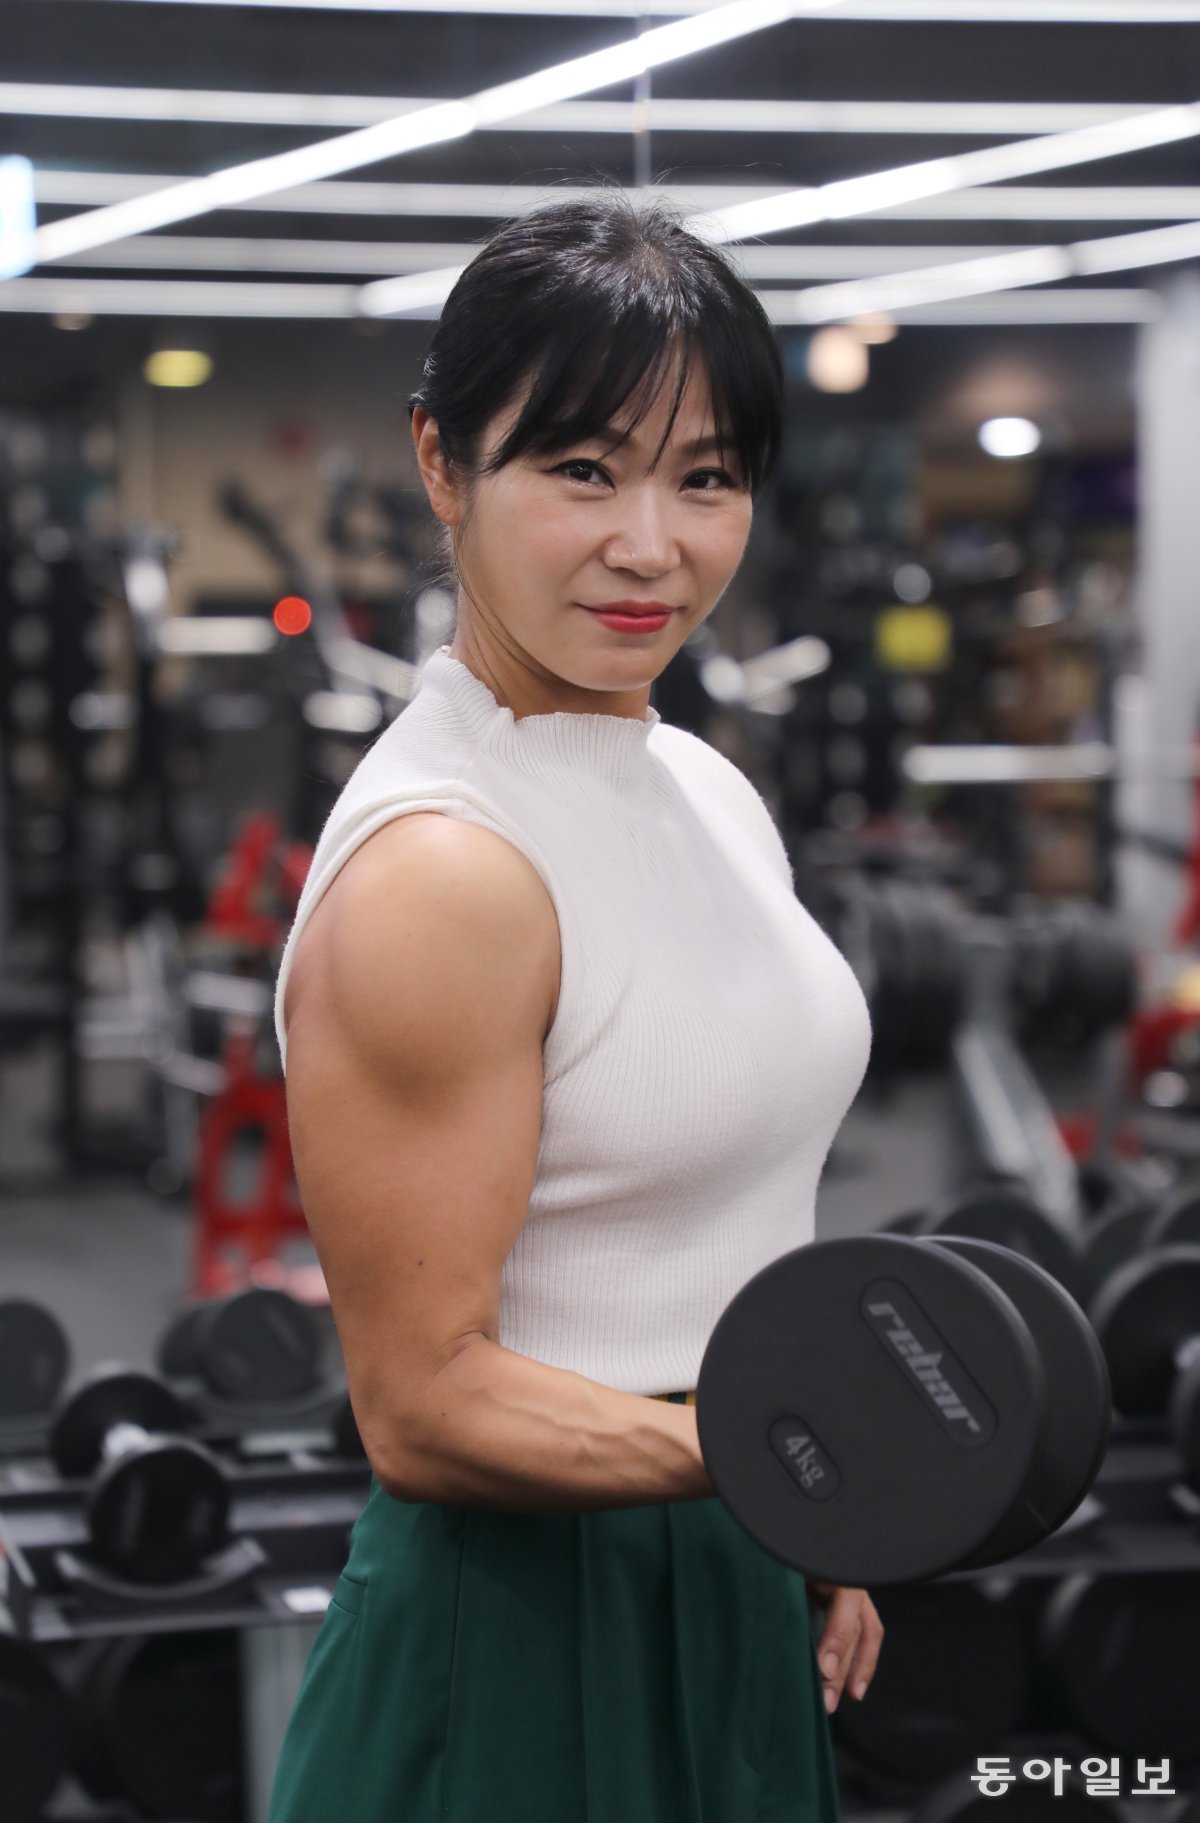 유경희 팀장이 서울 중구의 한 피트니스센터에서 근육 운동을 하고 있다. 이훈구 기자 ufo@donga.com